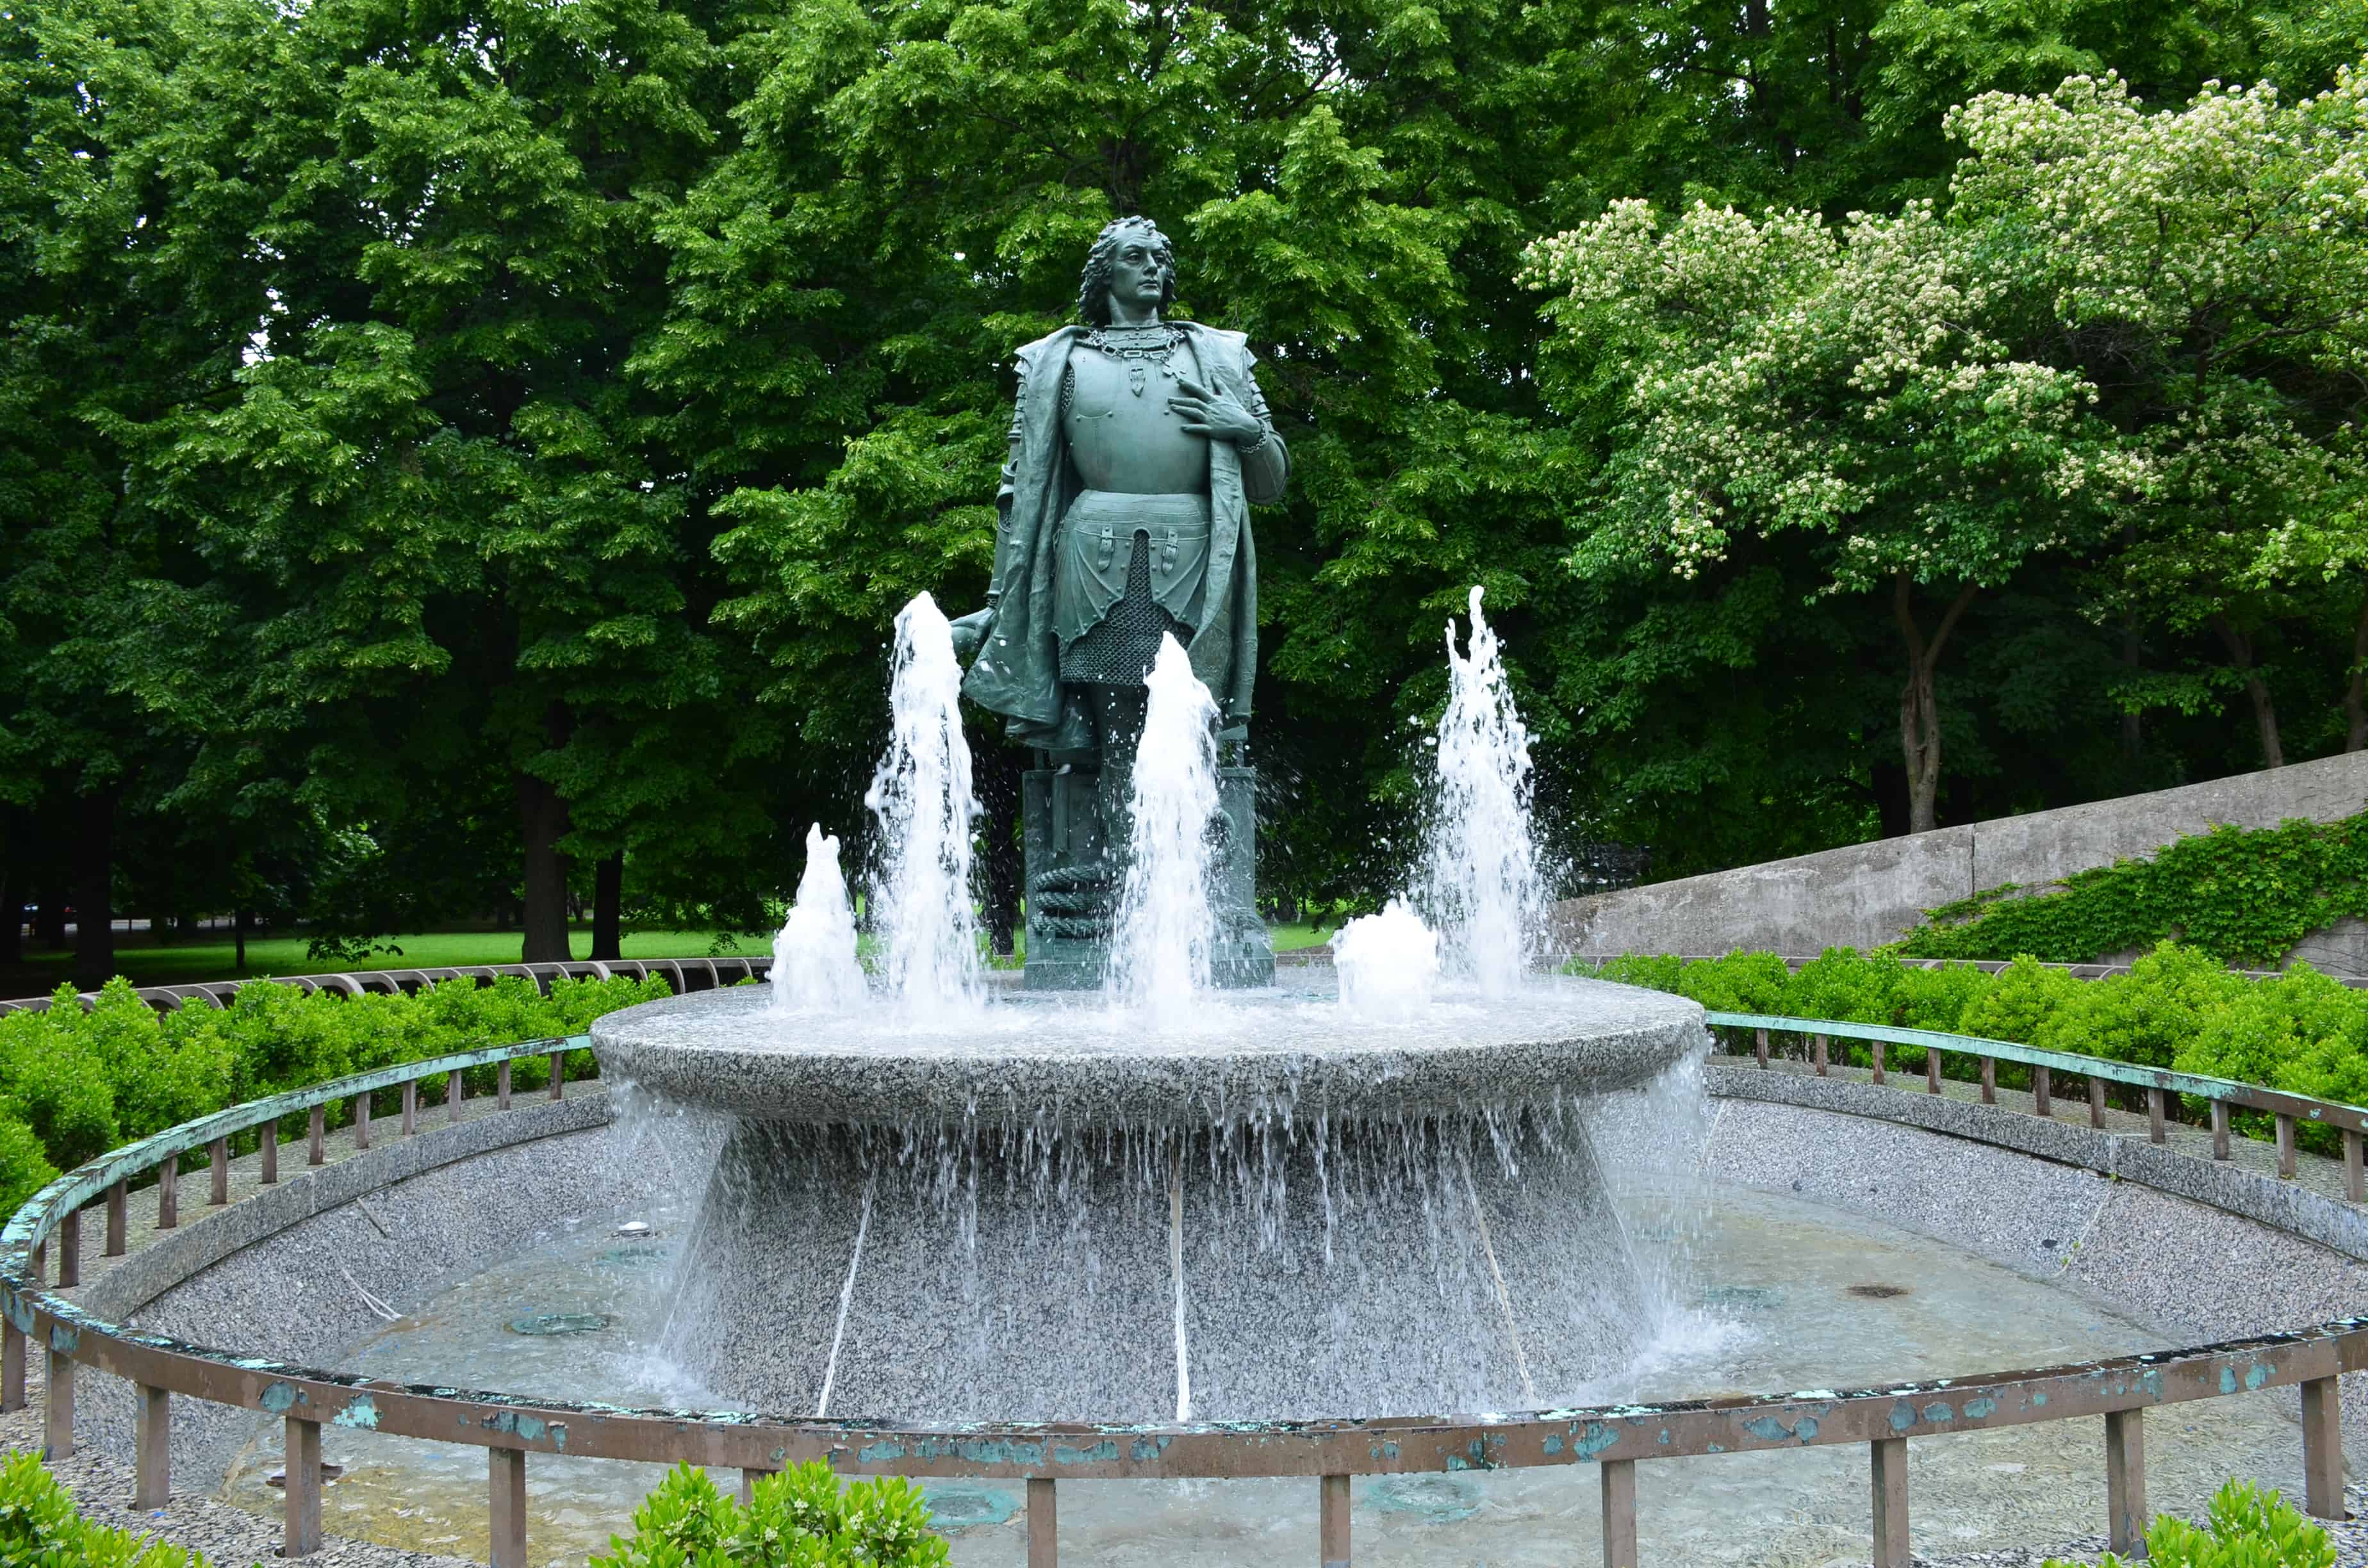 Columbus statue and fountain in Arrigo Park